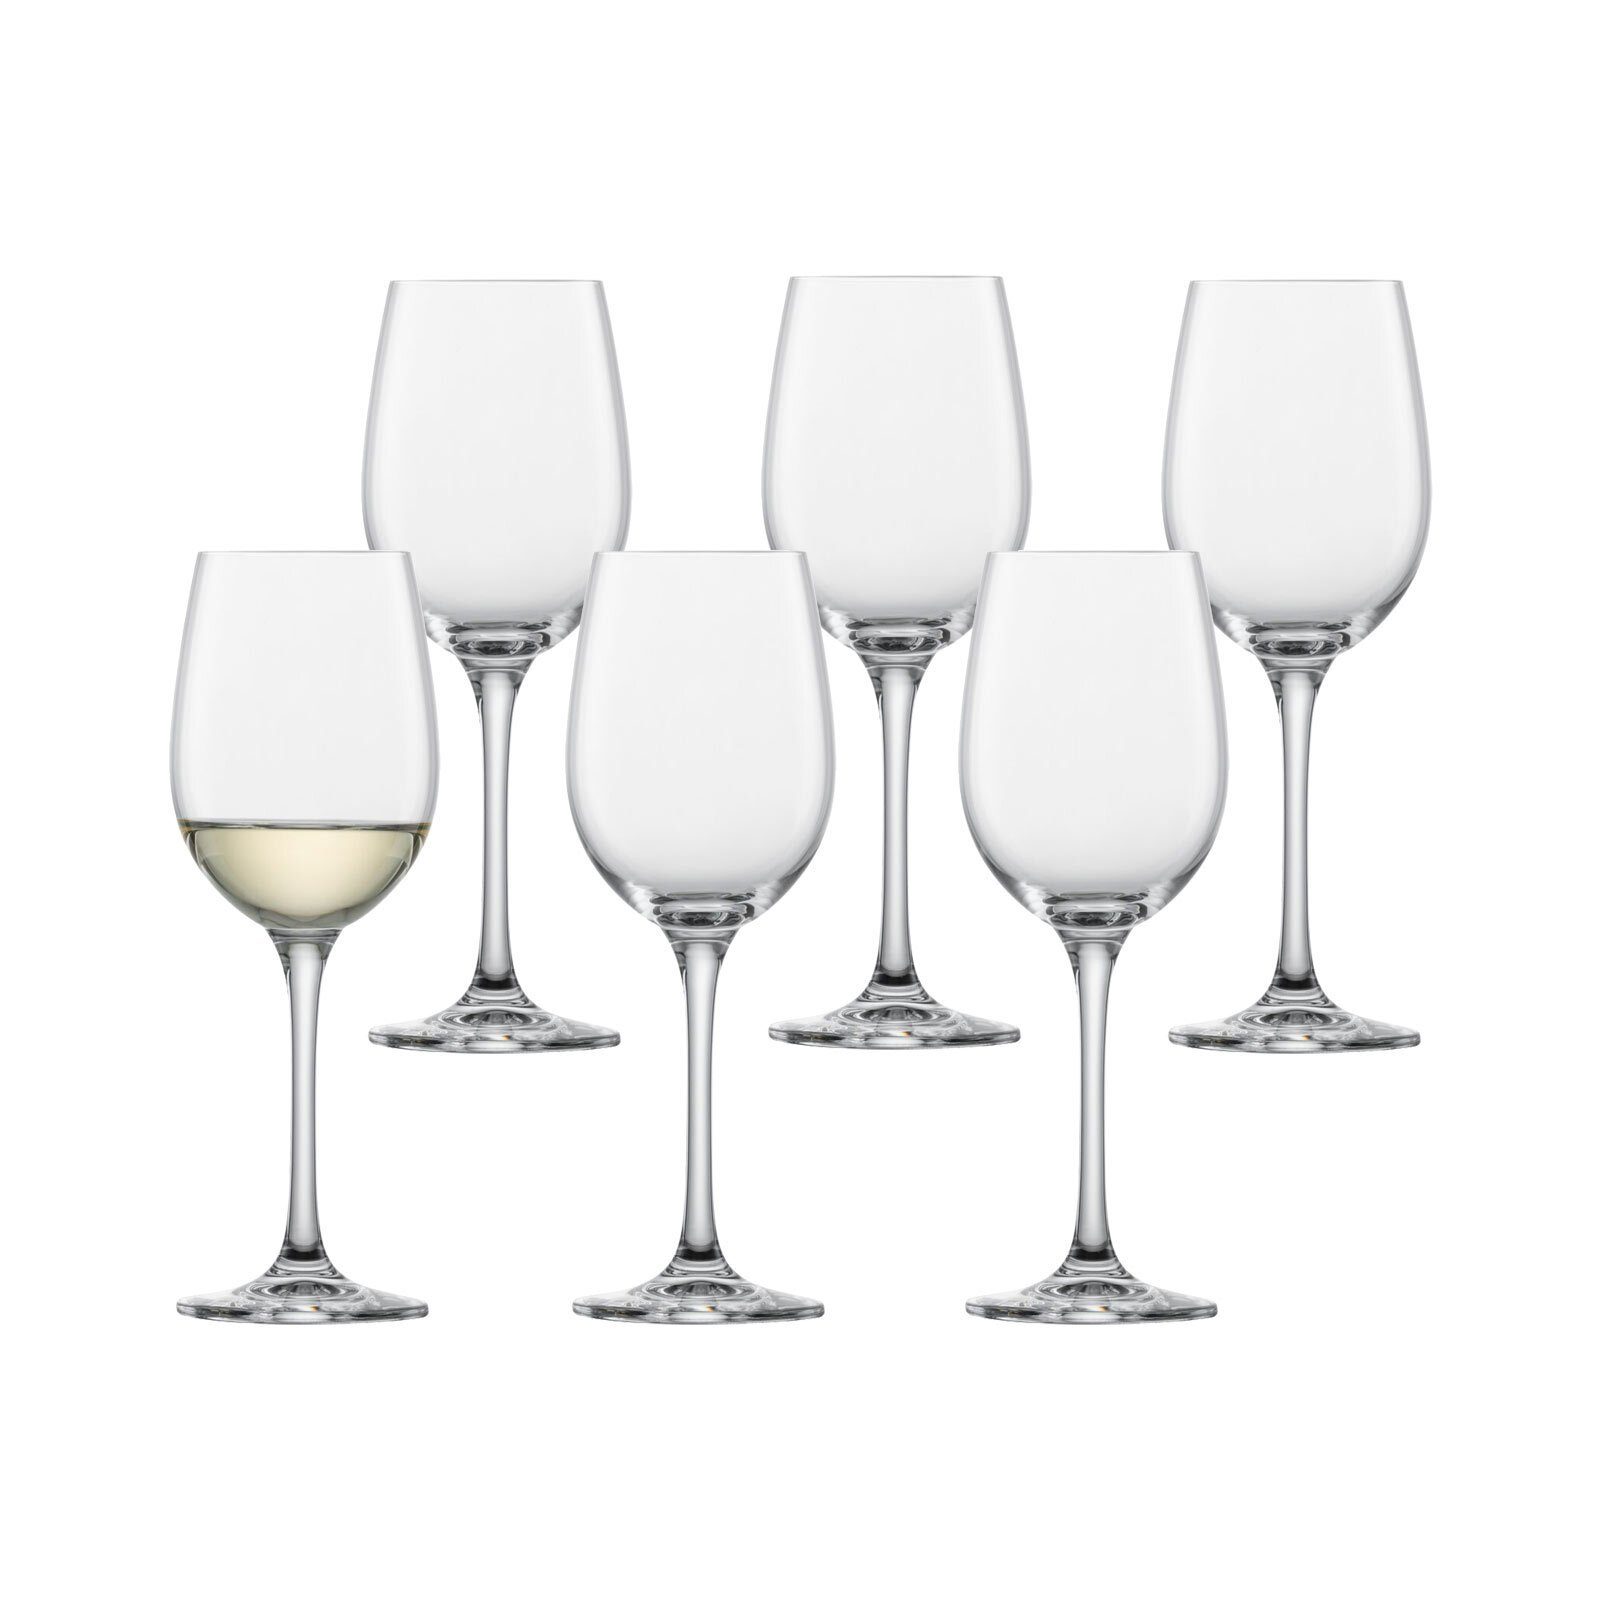 SCHOTT-ZWIESEL Weißweinglas Classico Weißweingläser 312 ml 6er Set, Glas